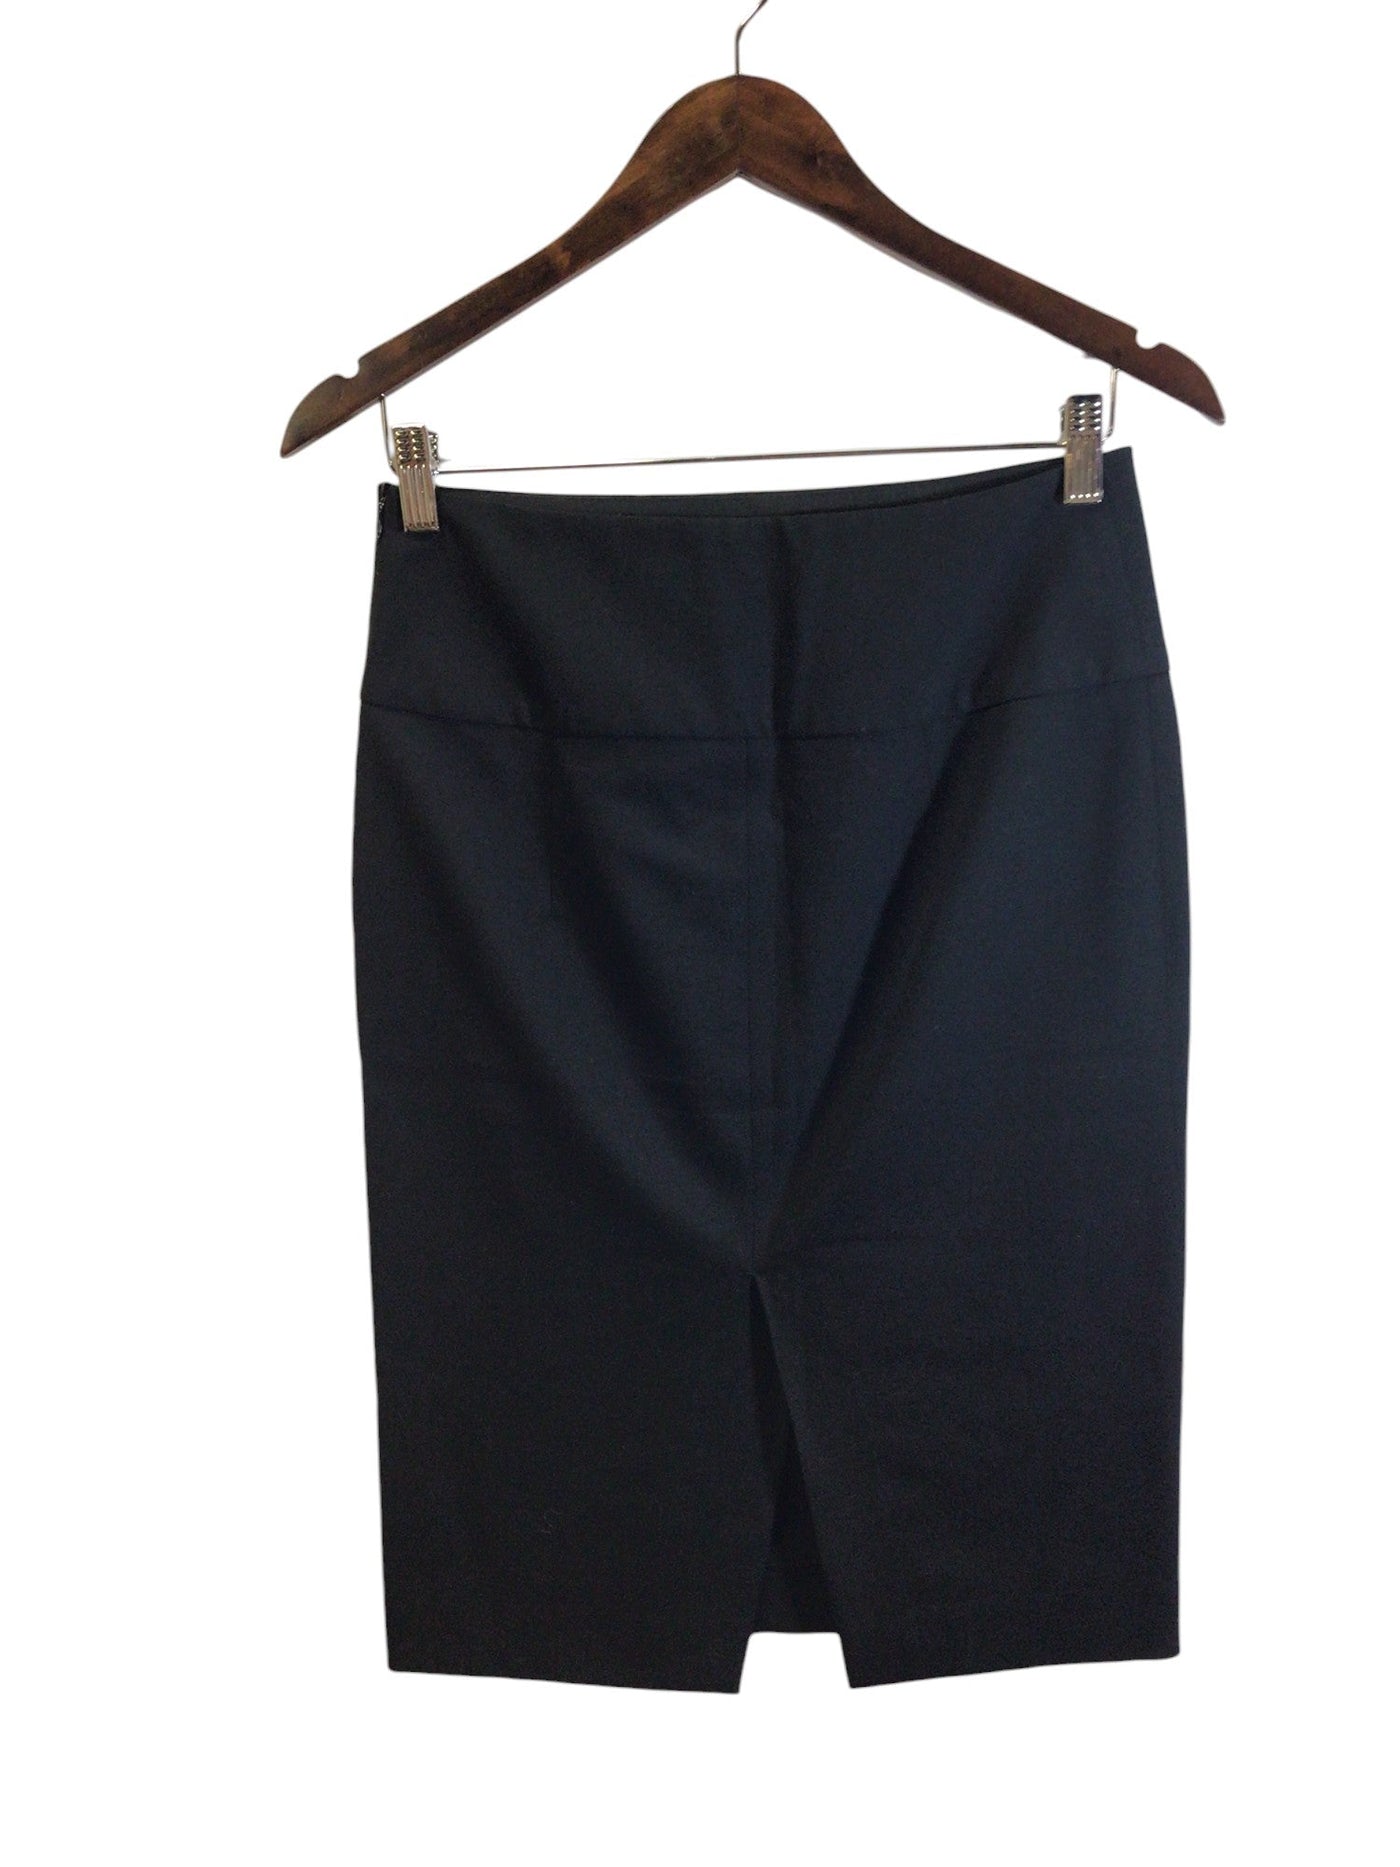 ZARA Women Casual Skirts Regular fit in Black - Size 4 | 13.99 $ KOOP